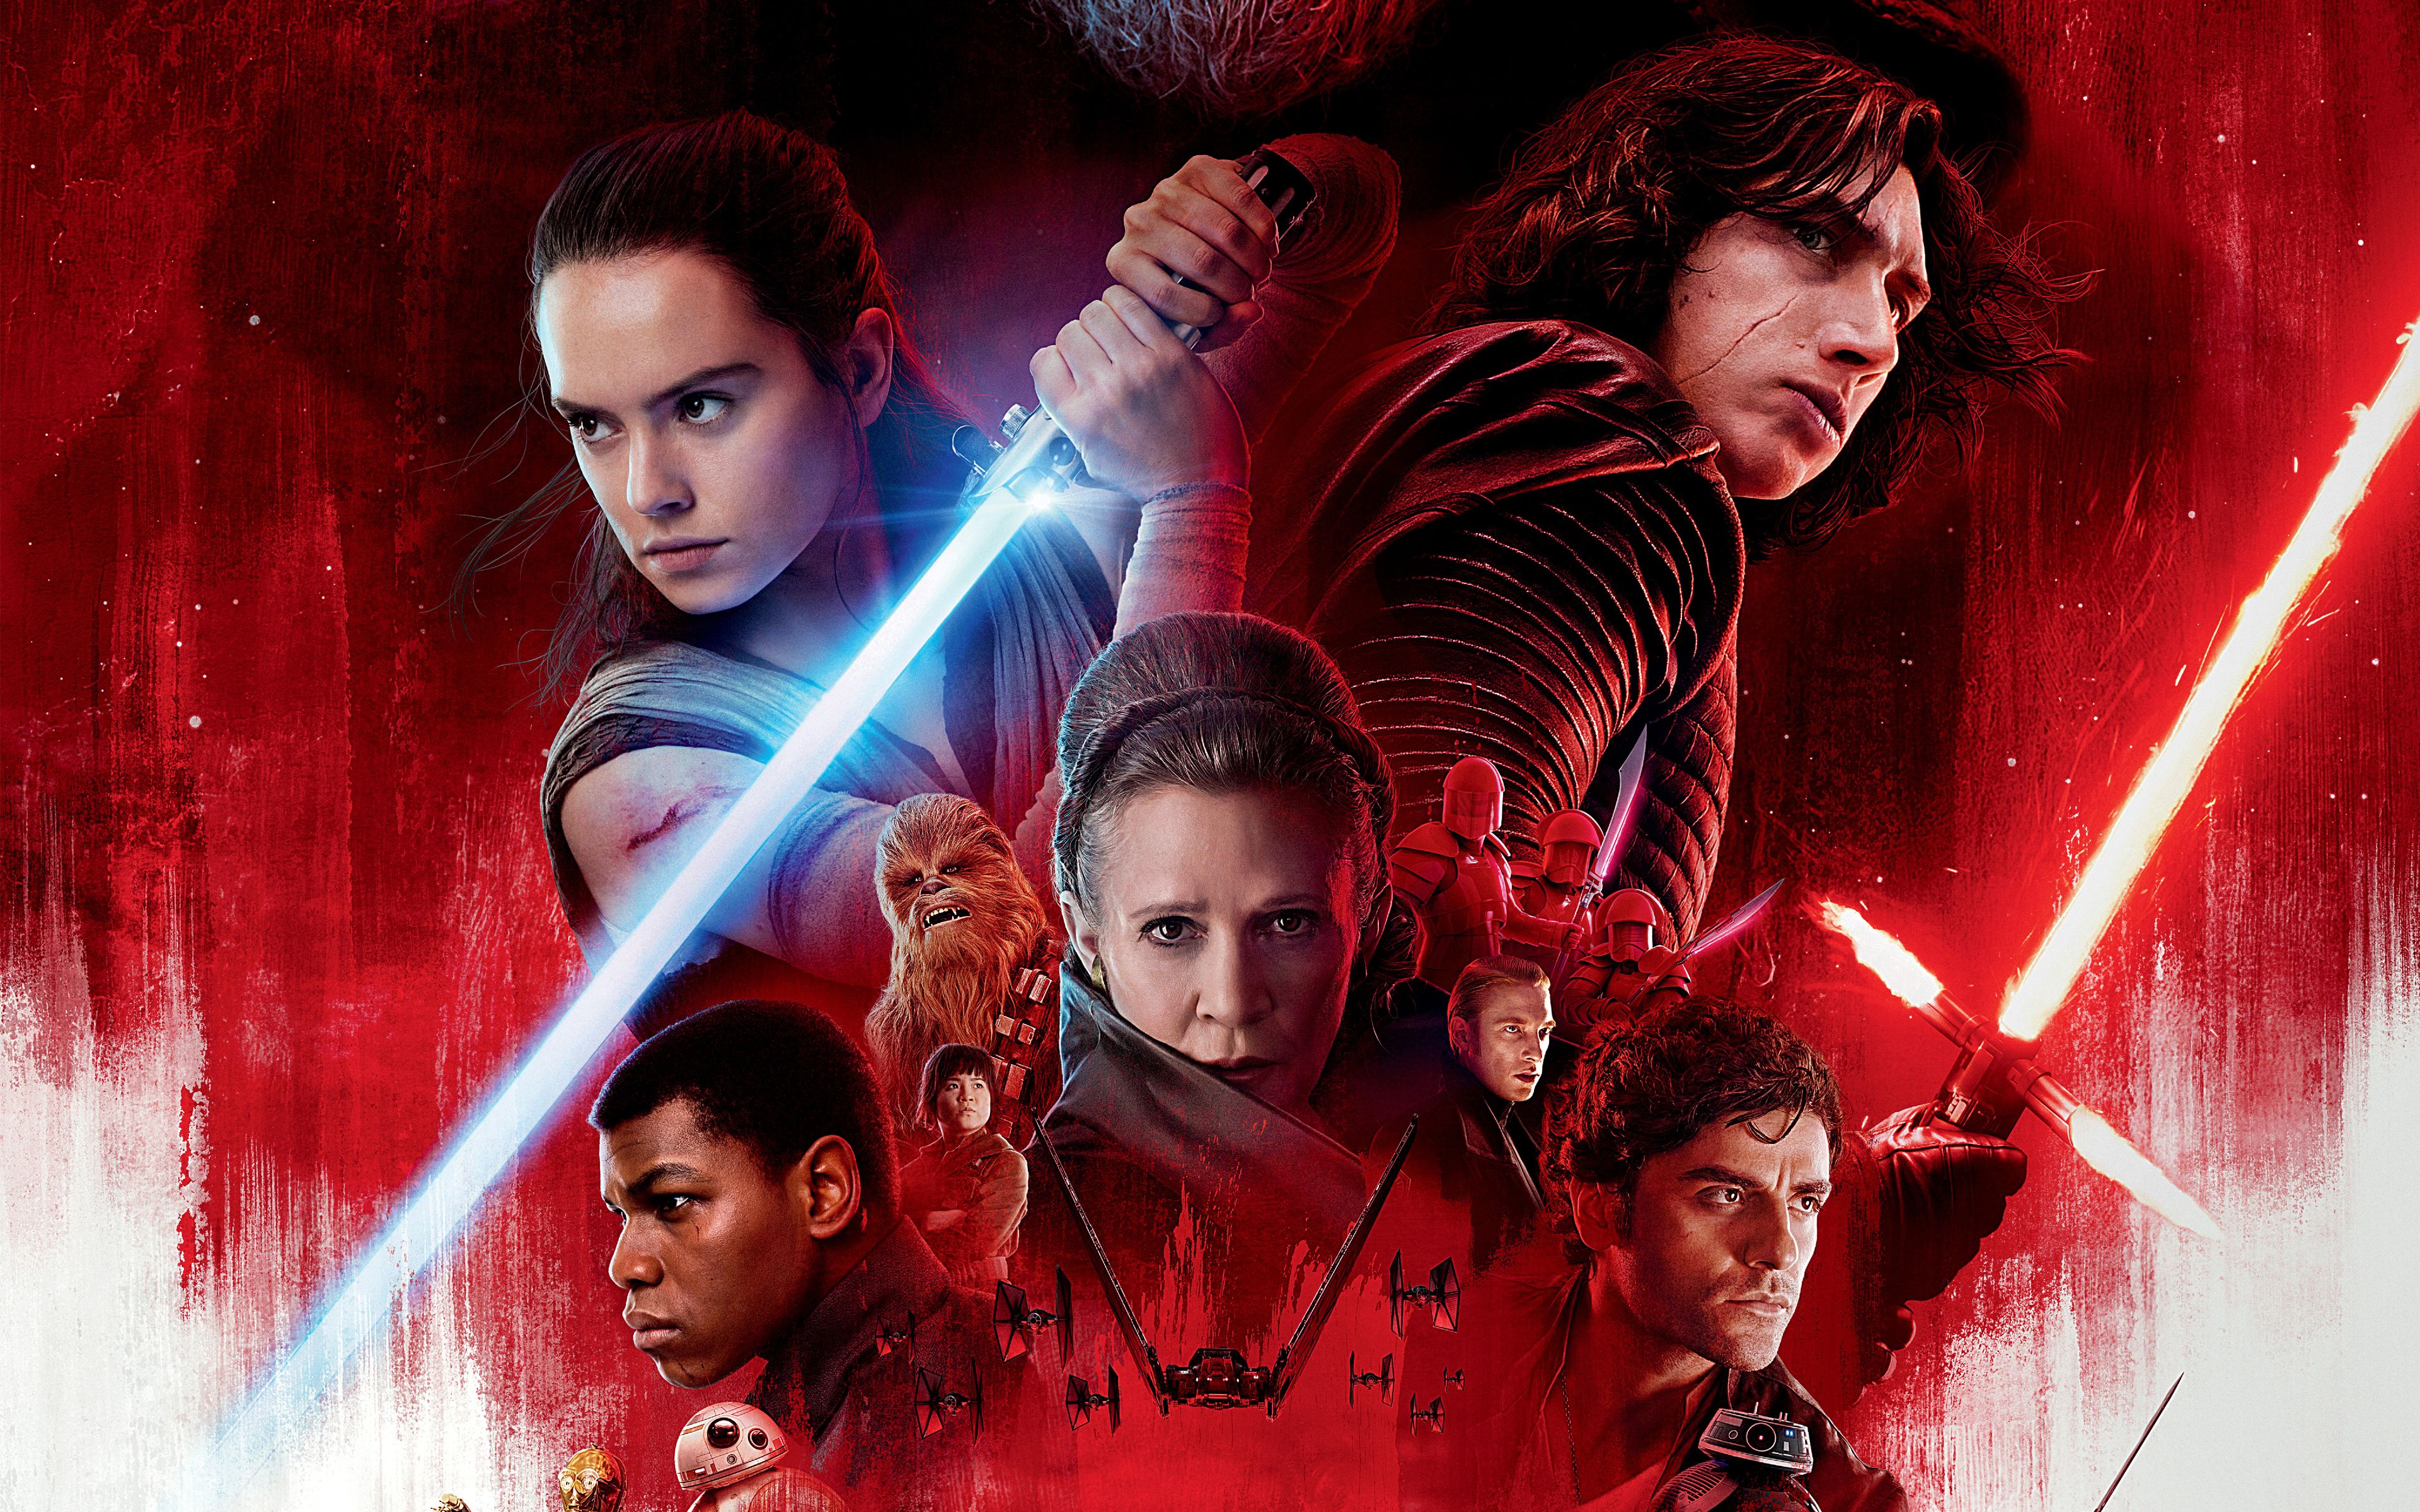 Star Wars: The Last Jedi HD Wallpaper. Background